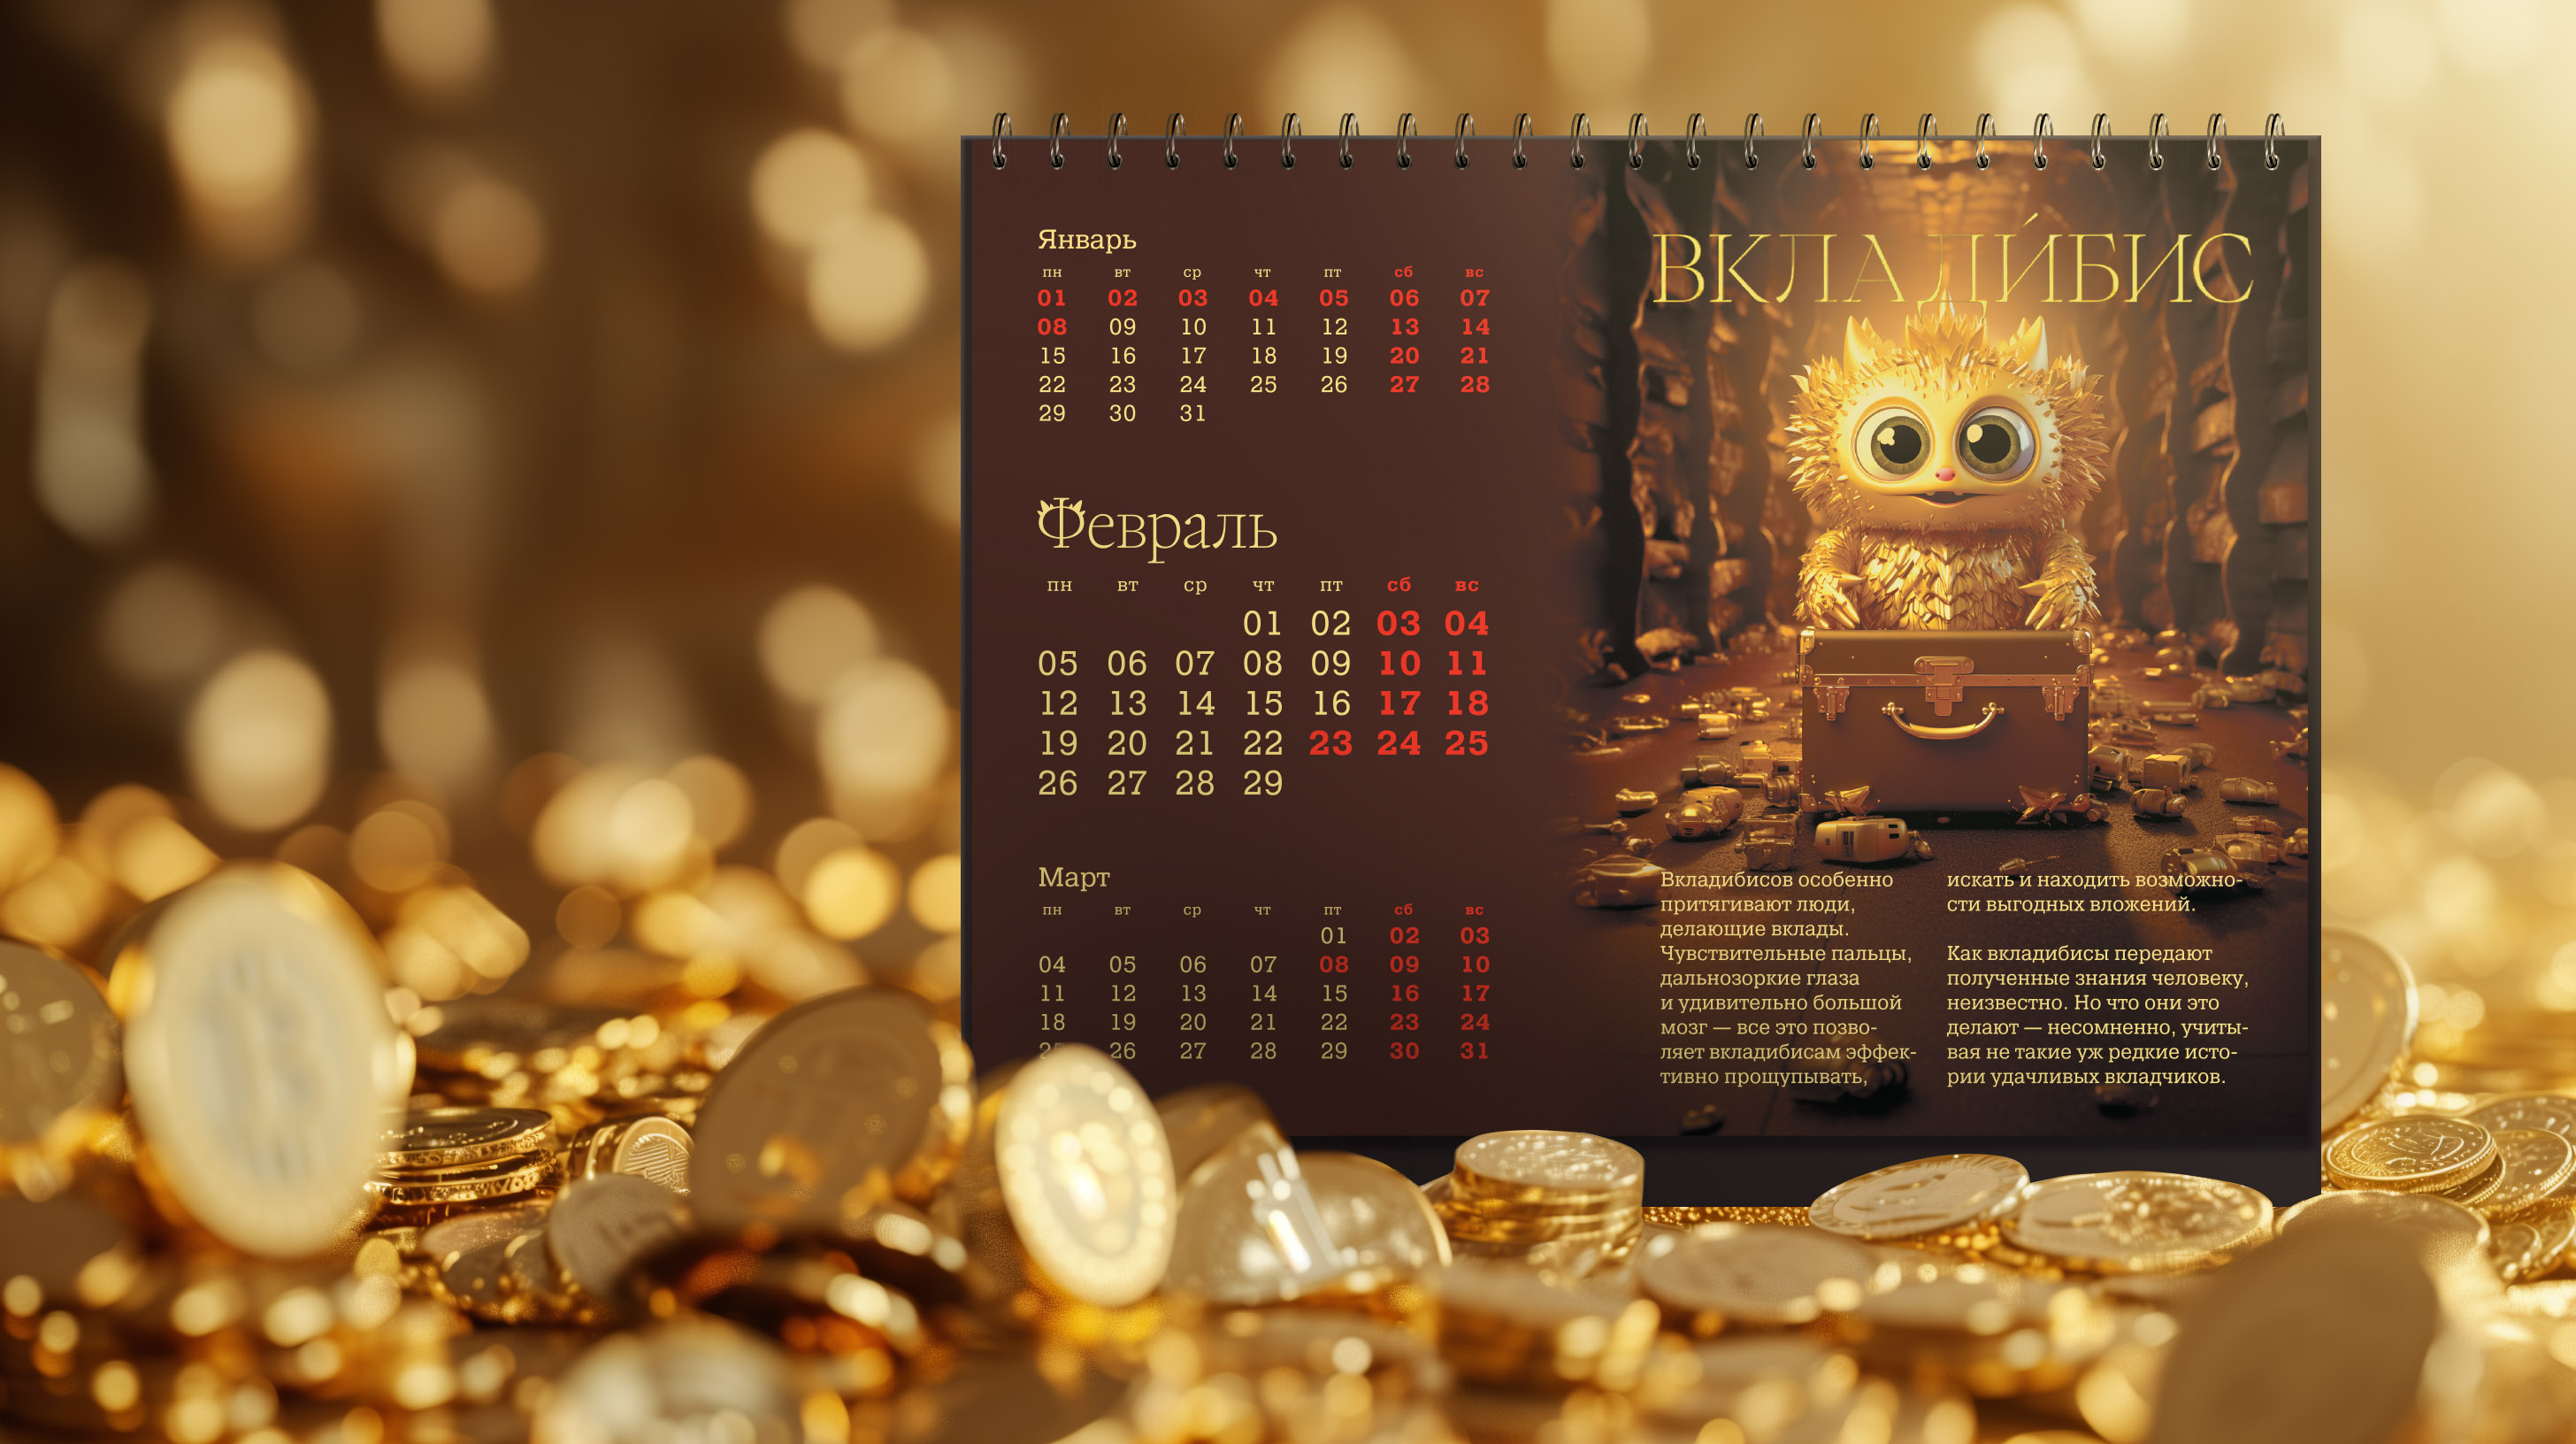 Страница календаря-домика с персонажем Вкладибисом